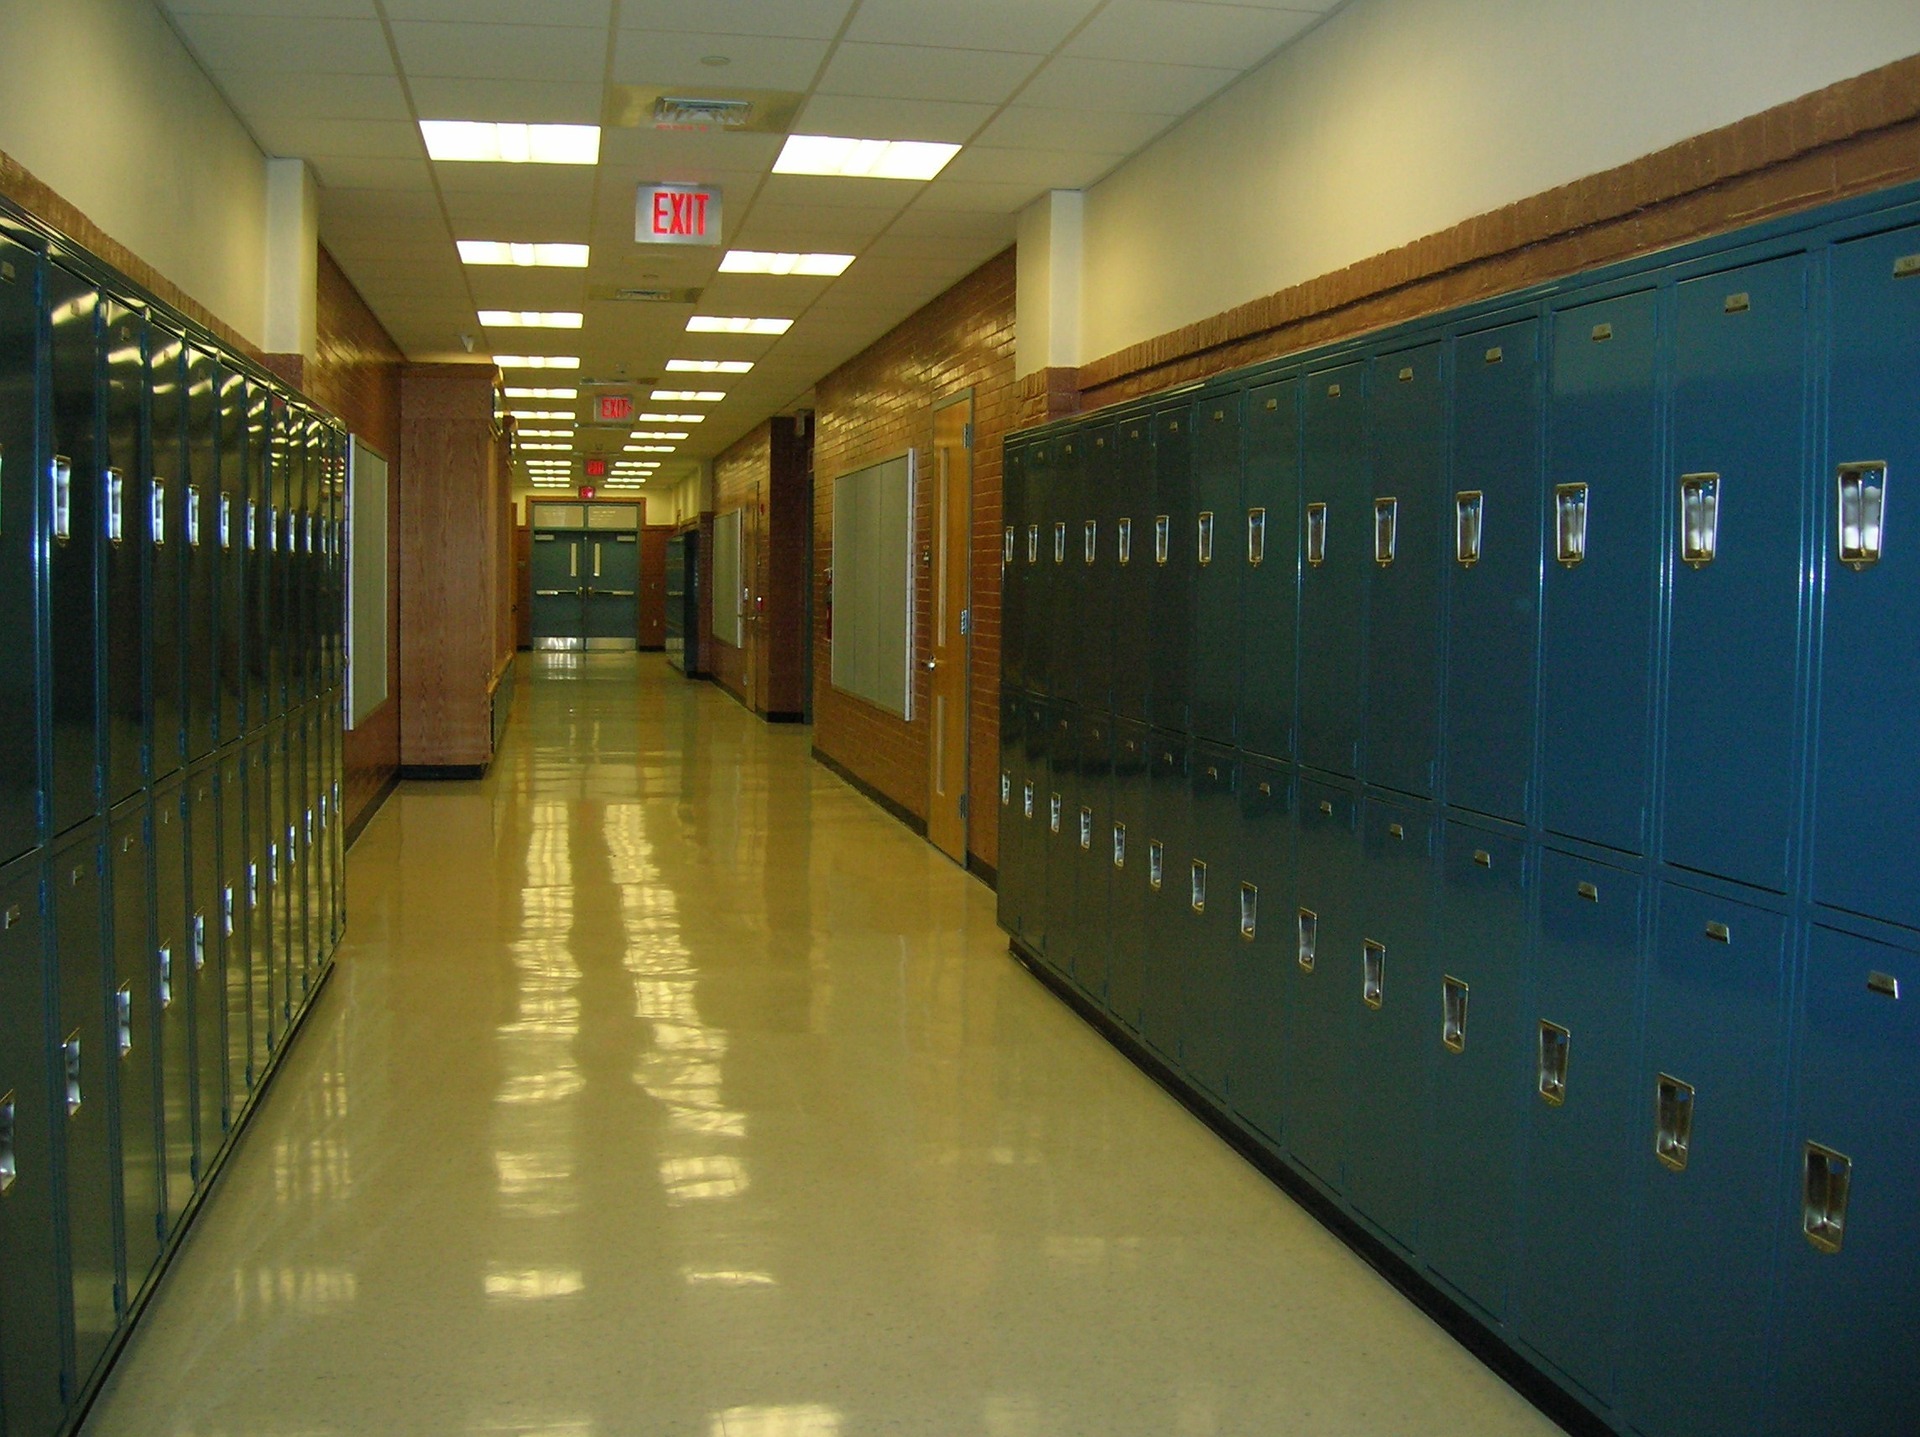 A high school hallway with lockers